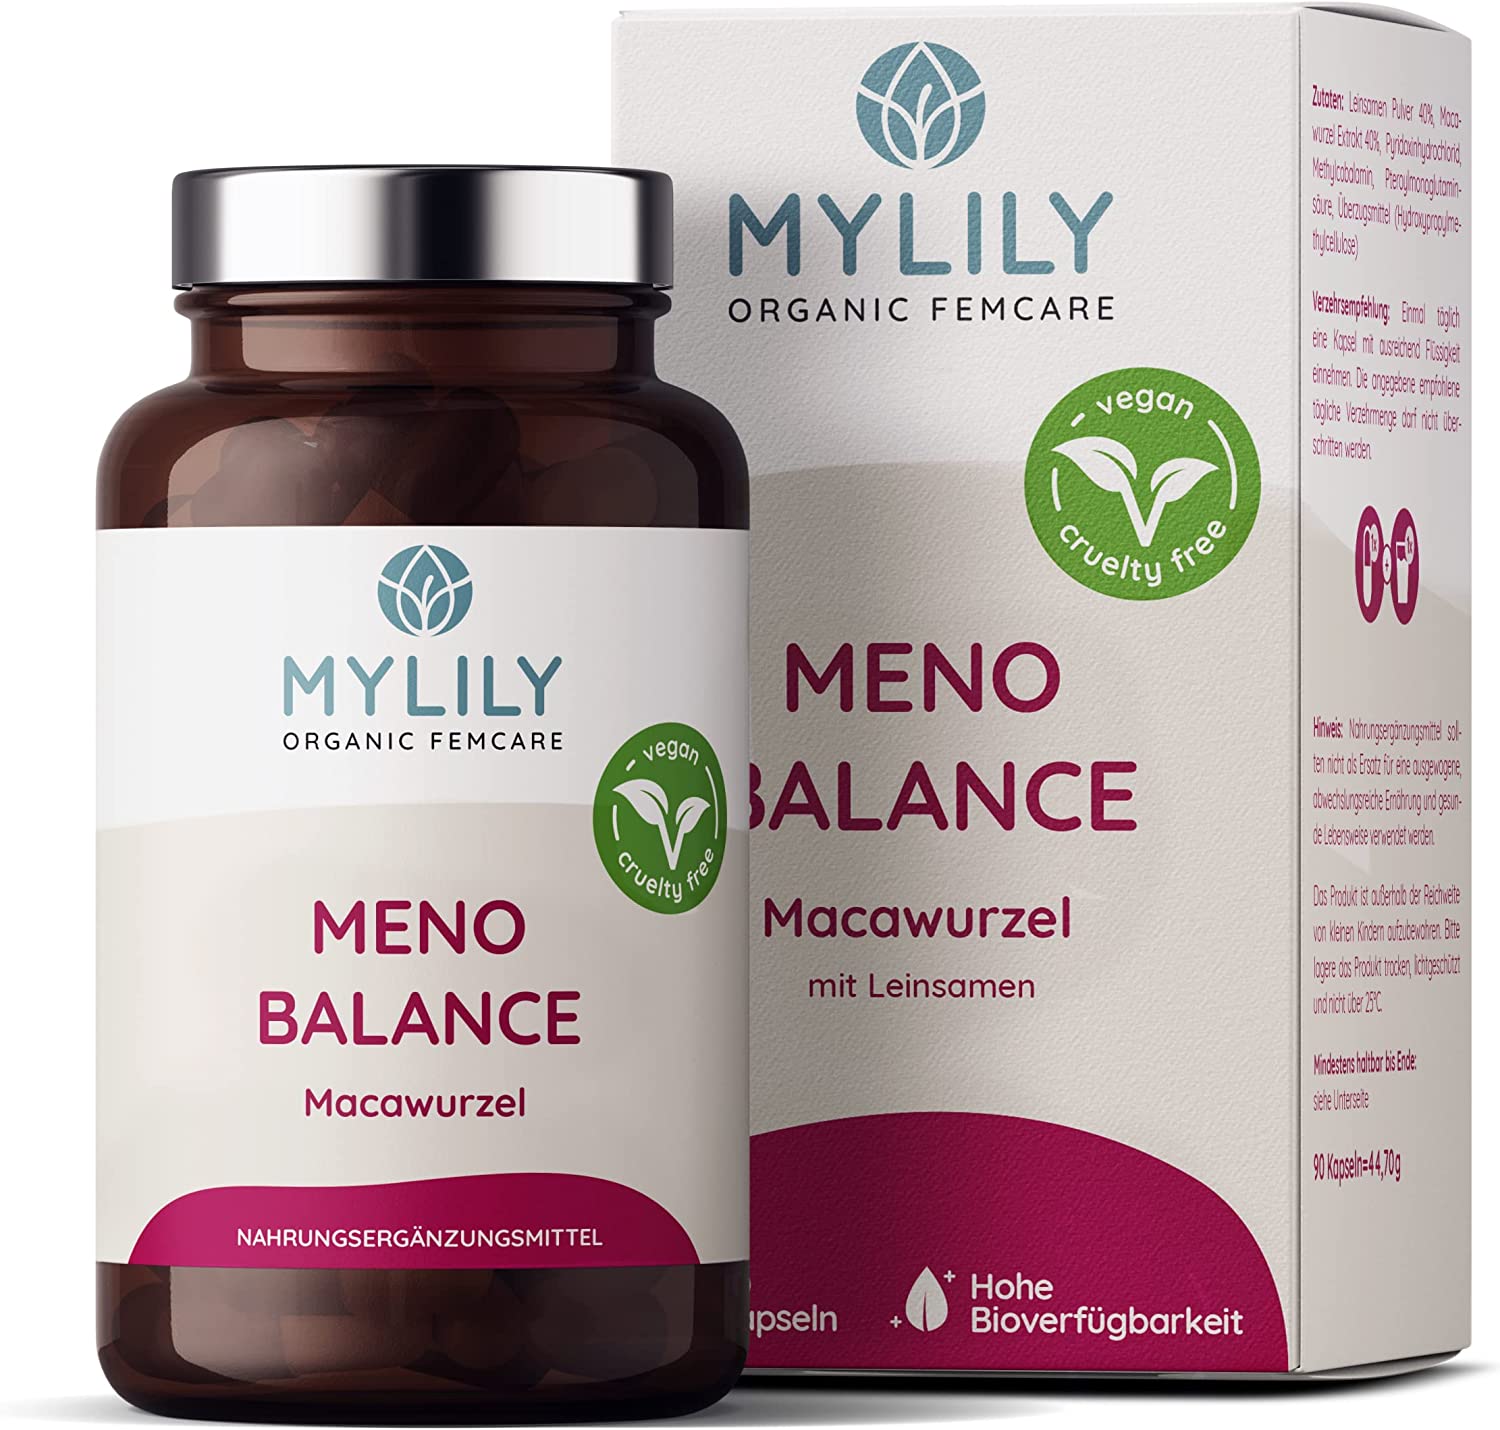 MYLILY Meno Balance | 90 Kapseln | Macawurzel Mit Leinsamen, Folsäure und Vitamin B6 |  für die Wechseljahre | vegan